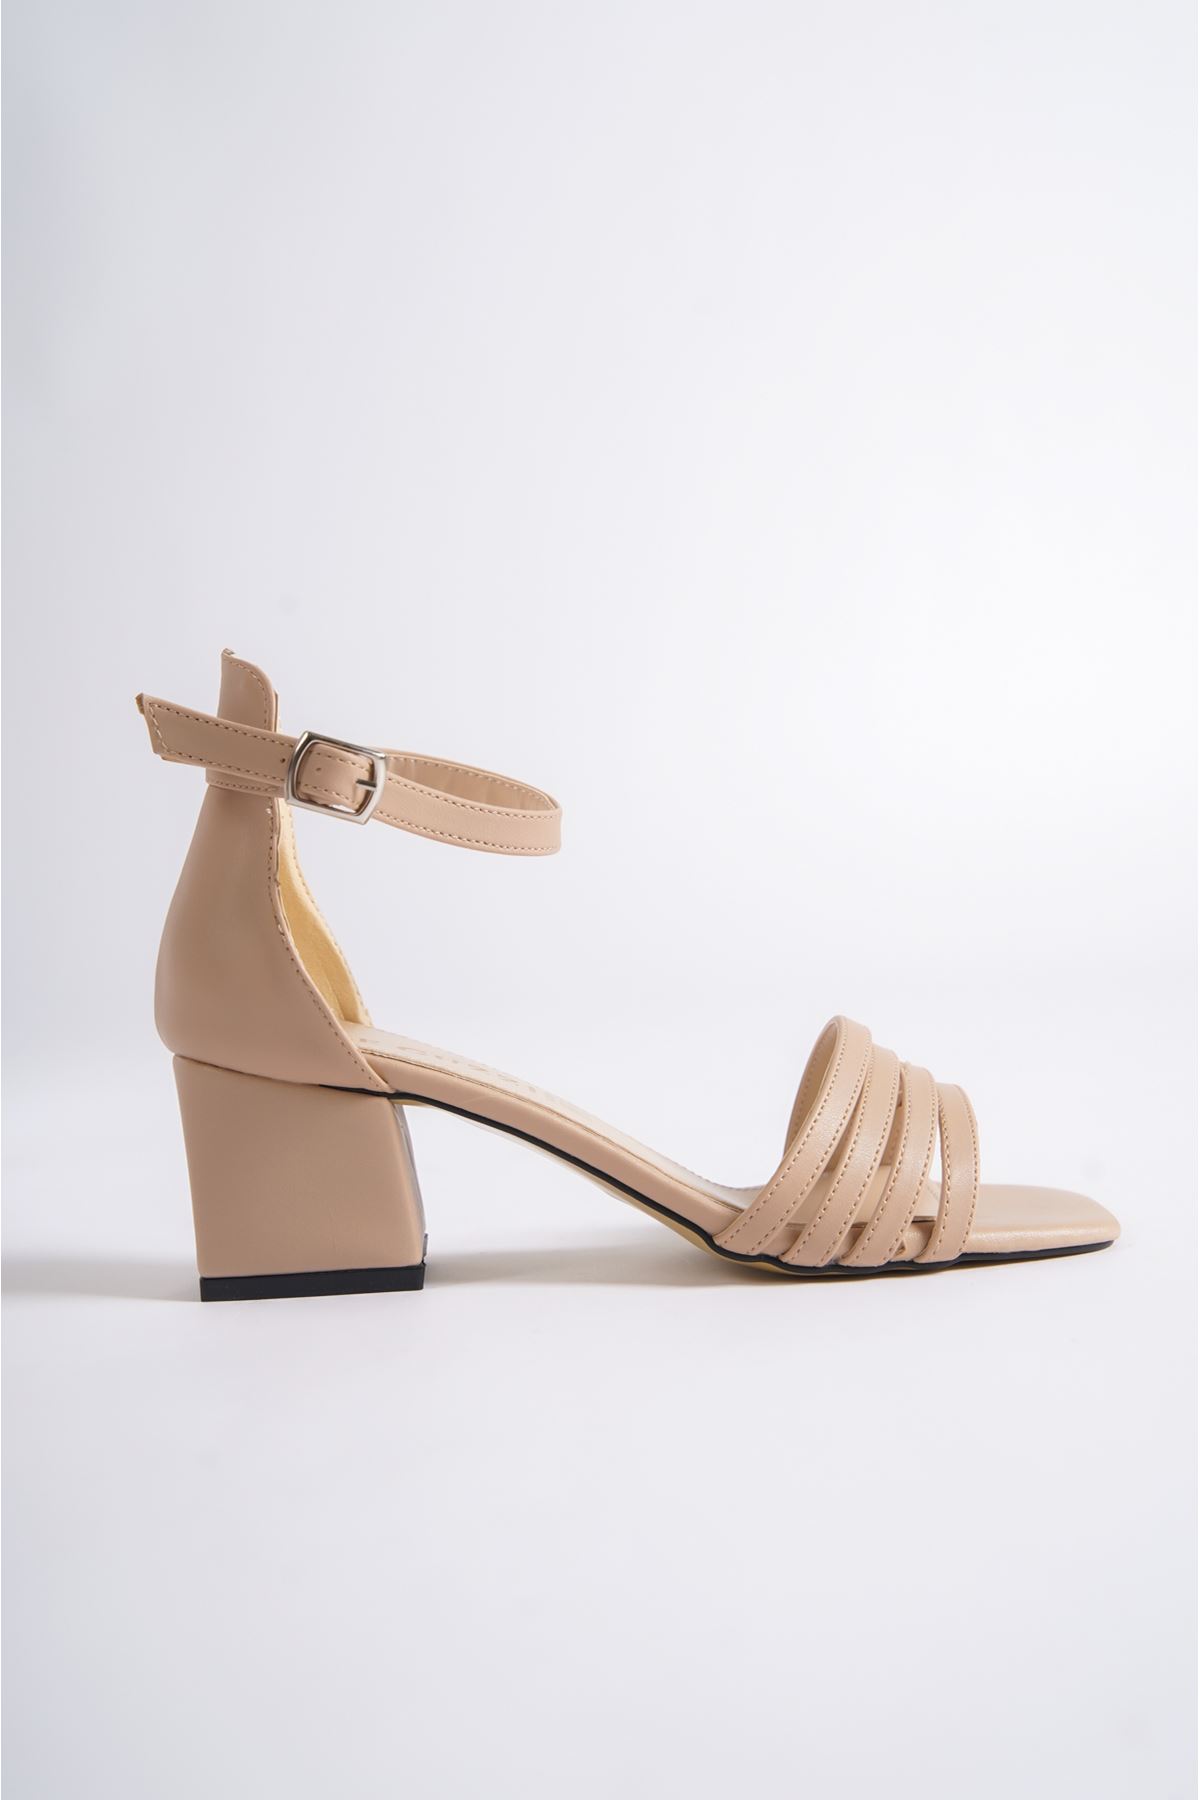 Diggory Nude Mat Deri Topuklu Kadın Ayakkabı